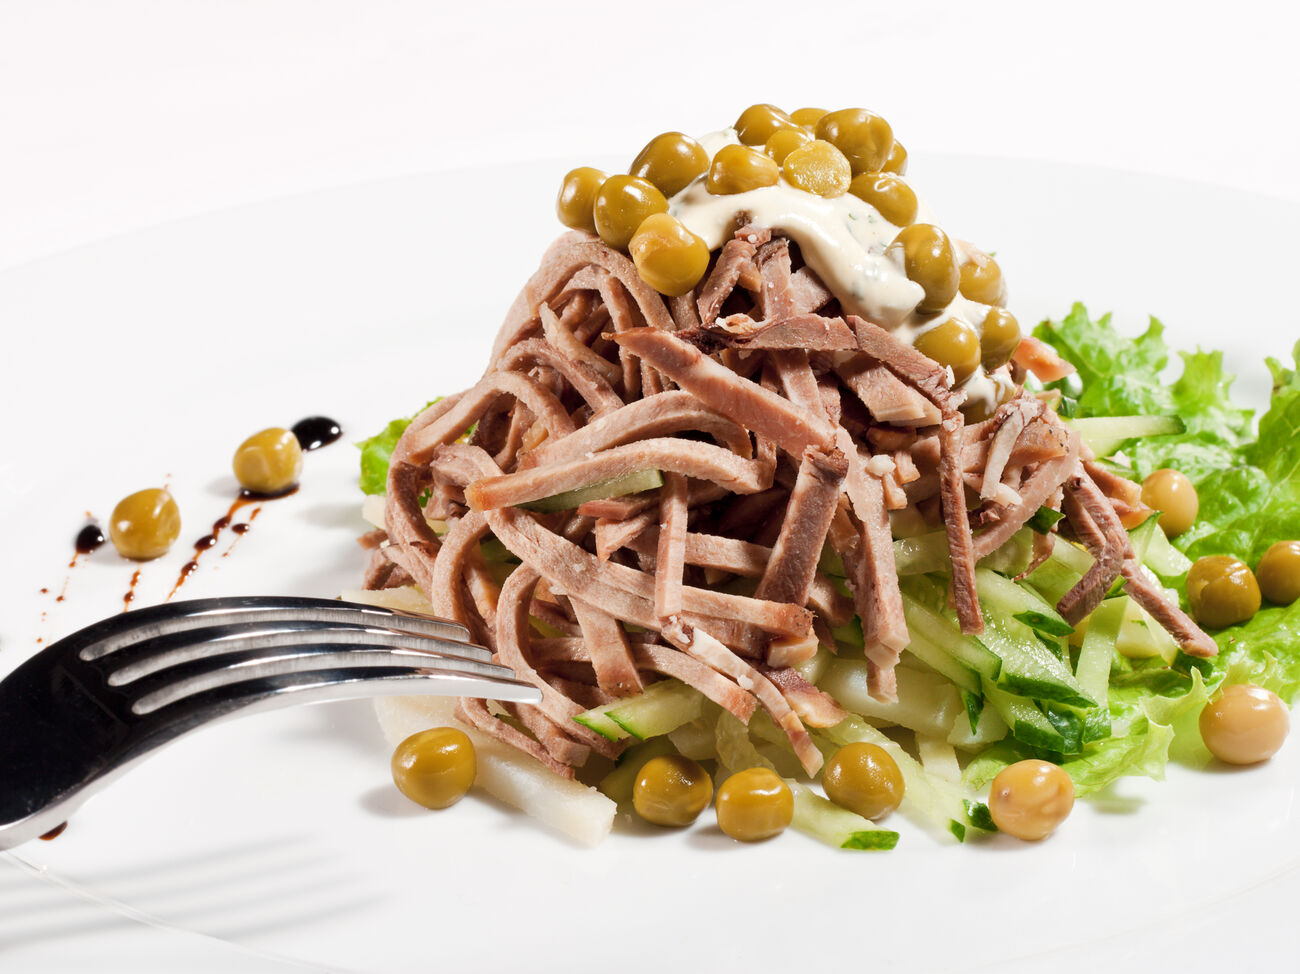 Второй рецепт — салат с языком и шампиньонами, с добавлением ветчины